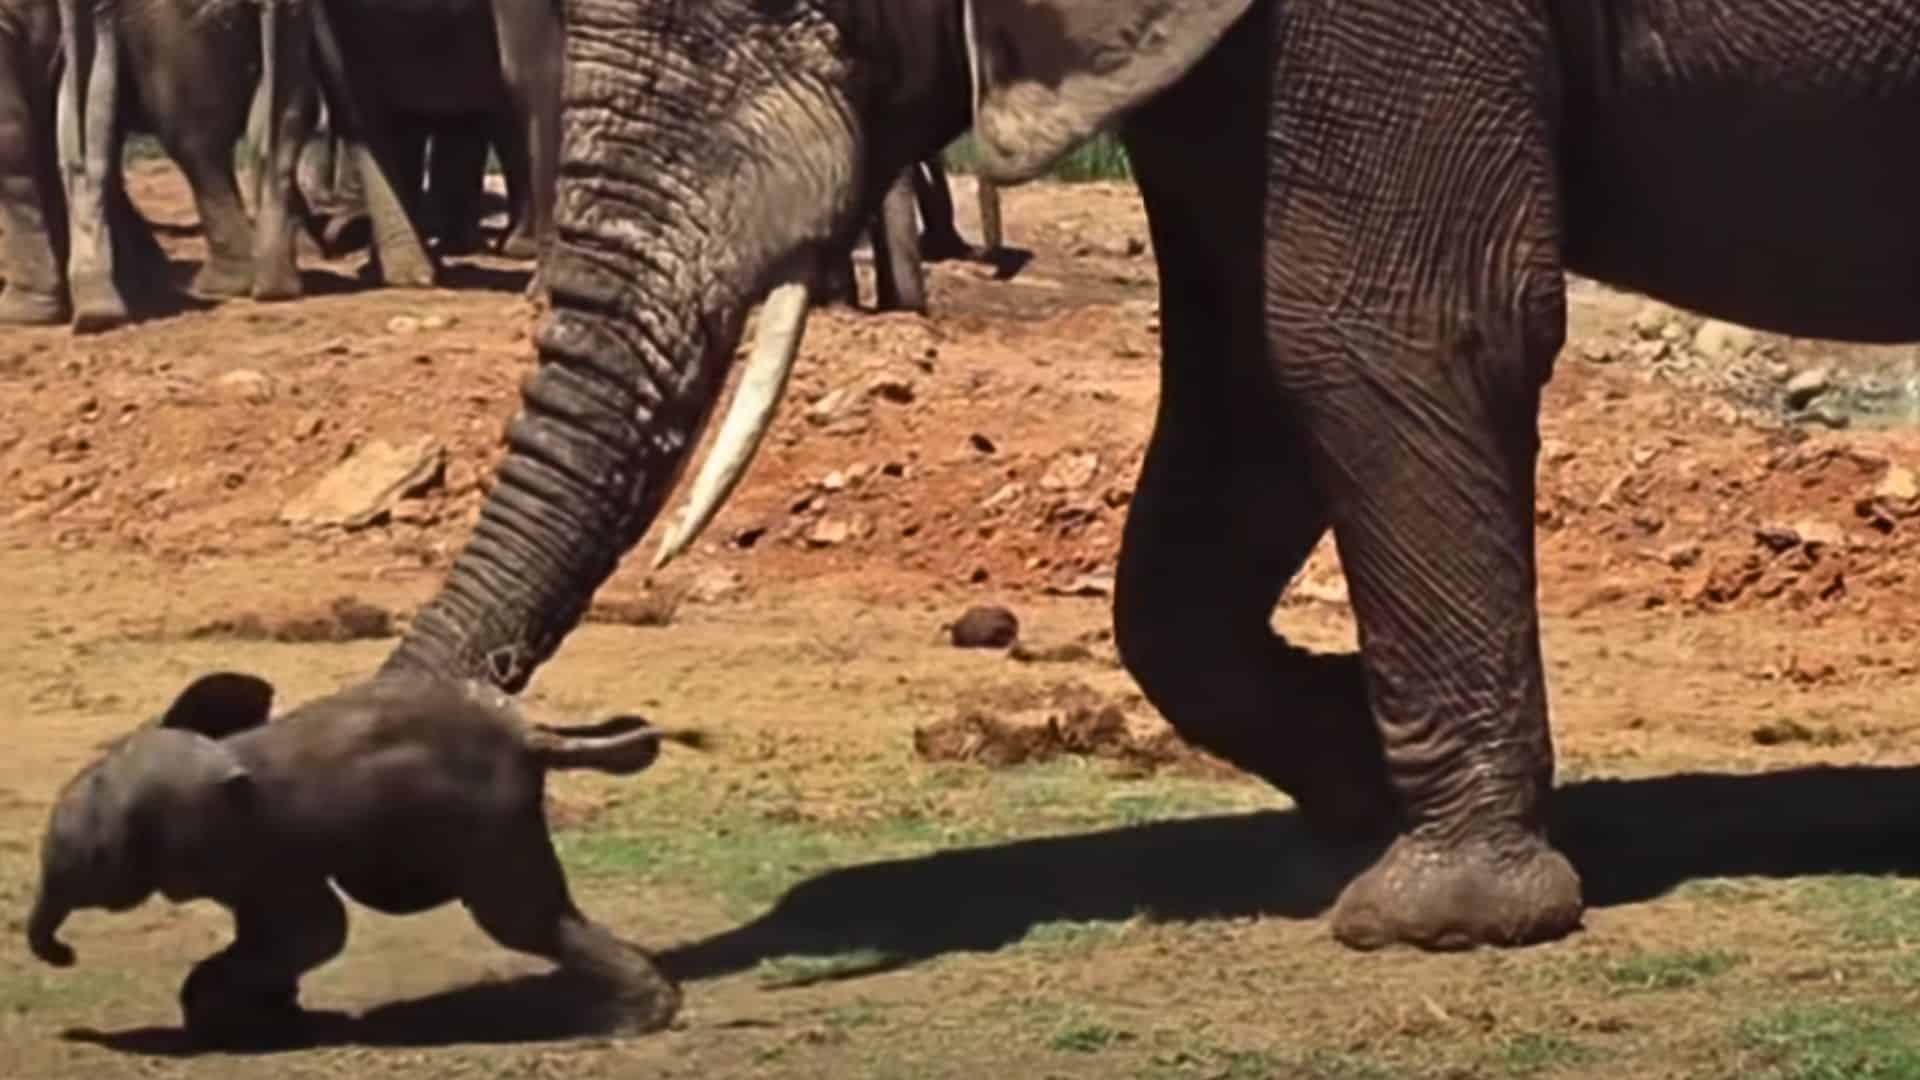 elephant tosses around baby elephant